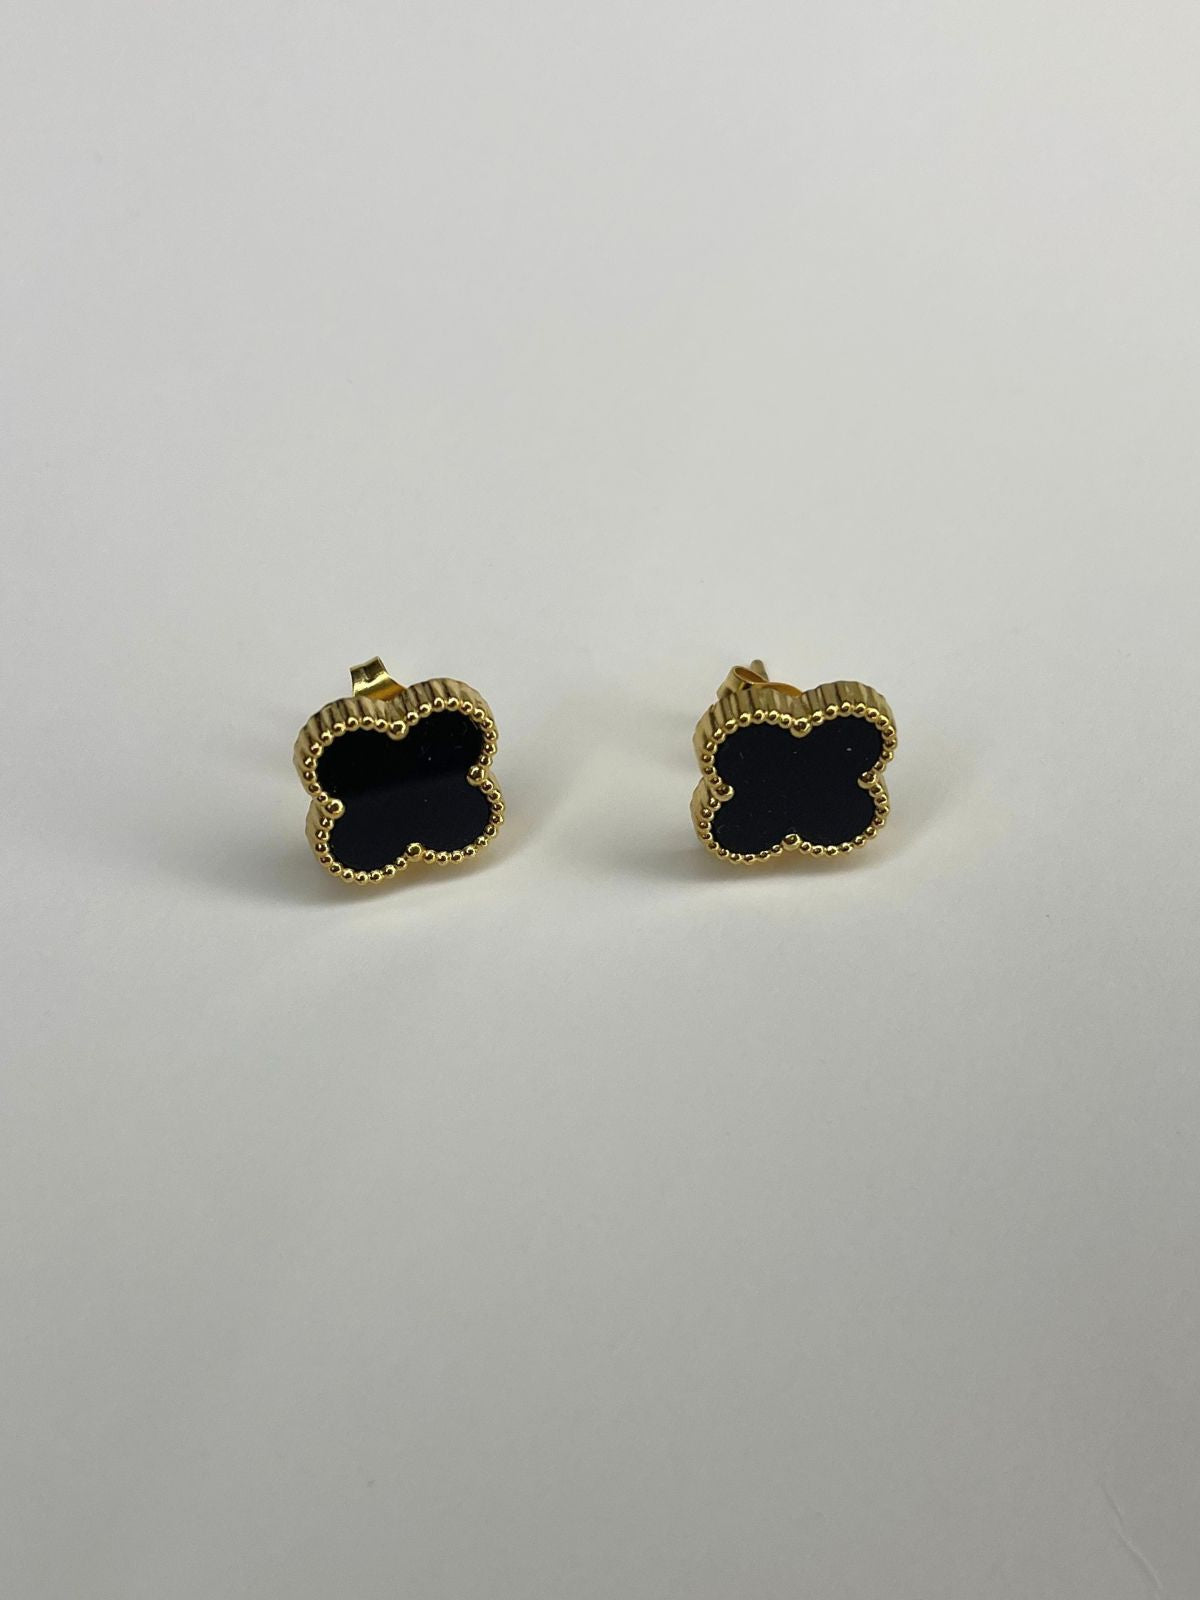 Clover Enamel Earrings in Black